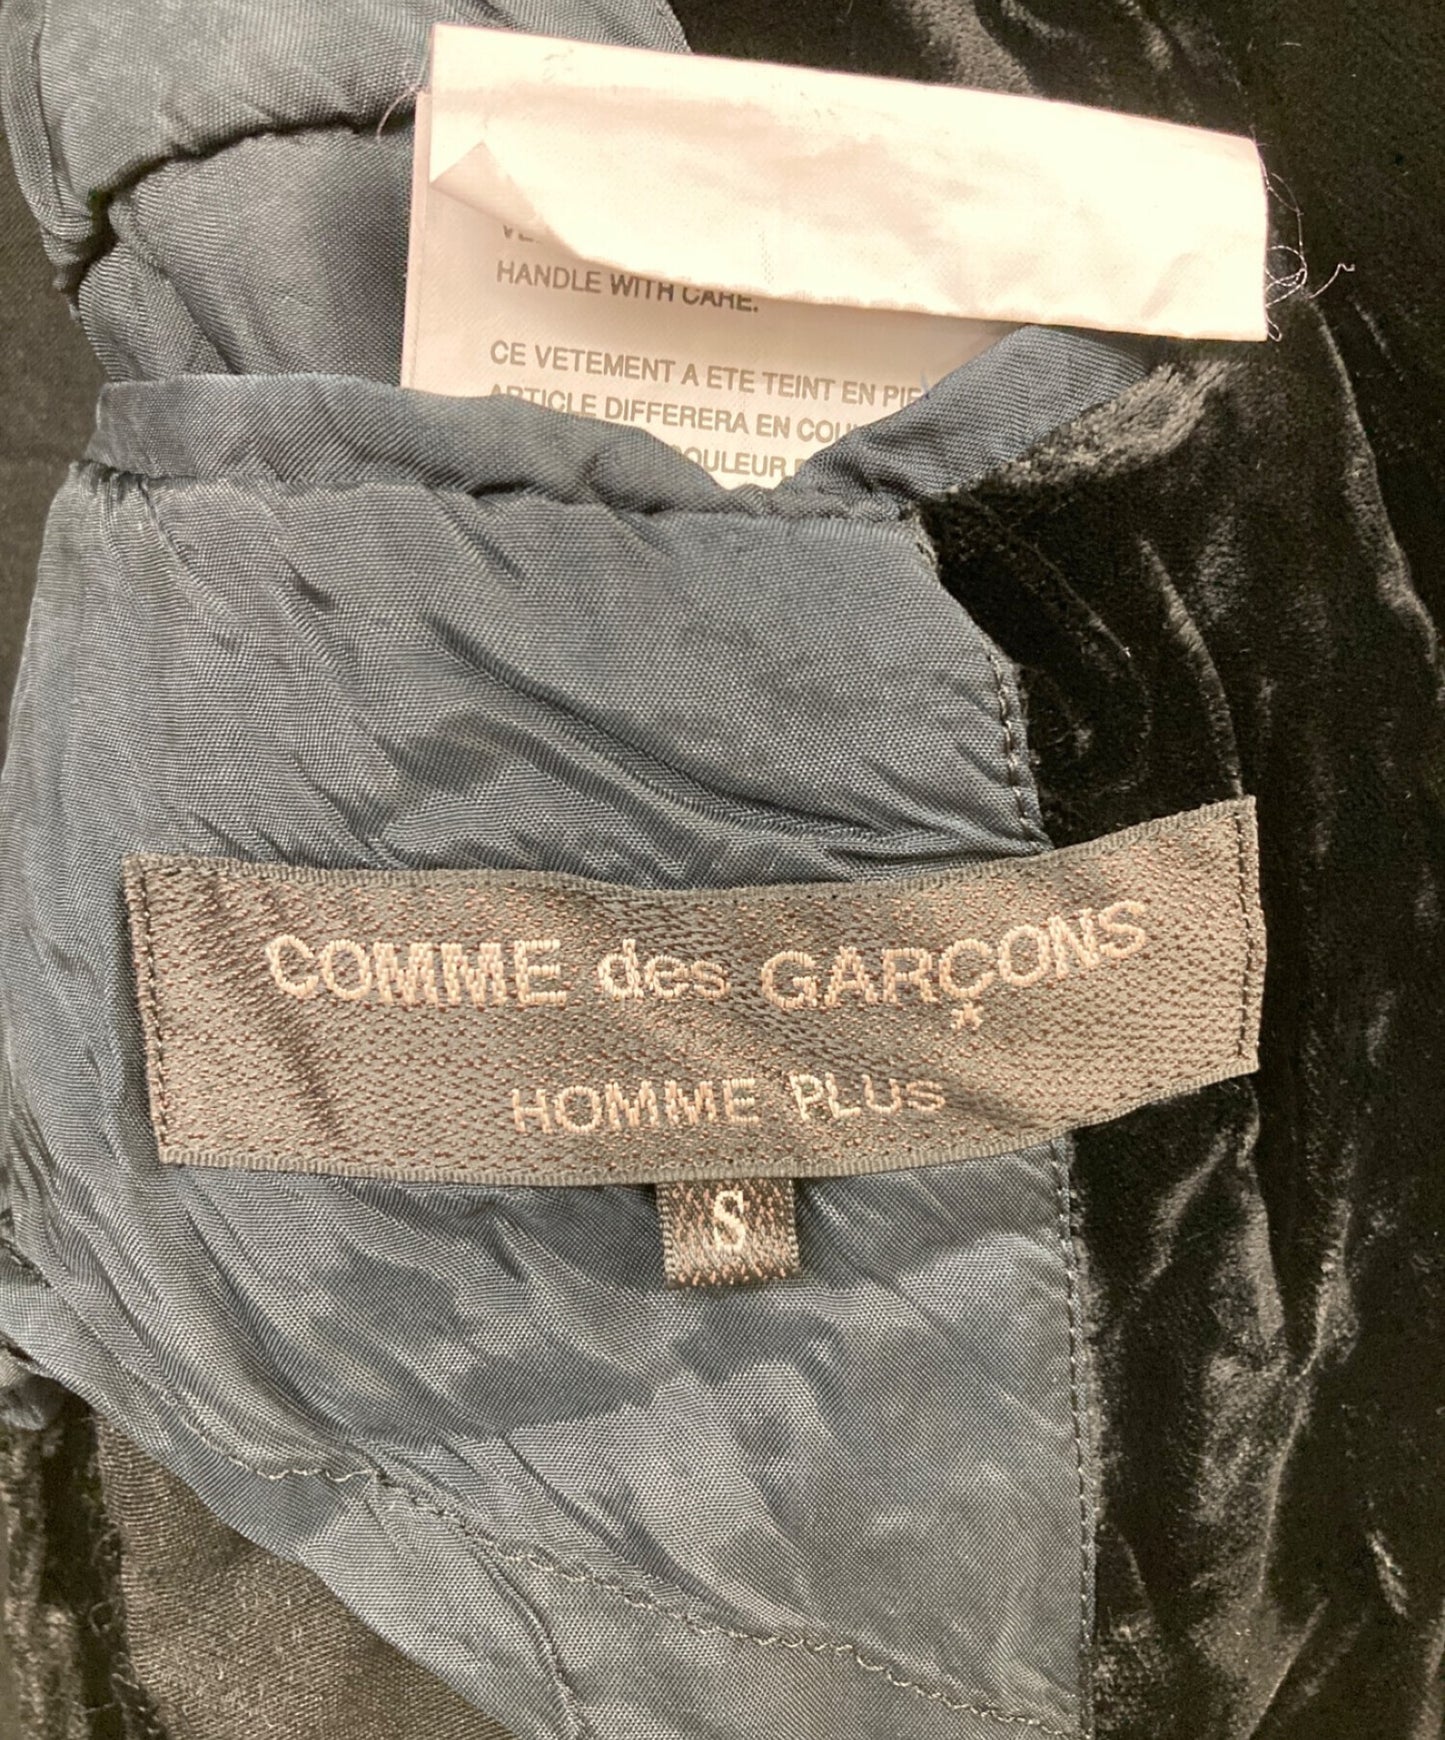 Comme des Garcons Homme Plus Ted的天鵝絨夾克/1B夾克PO-J083